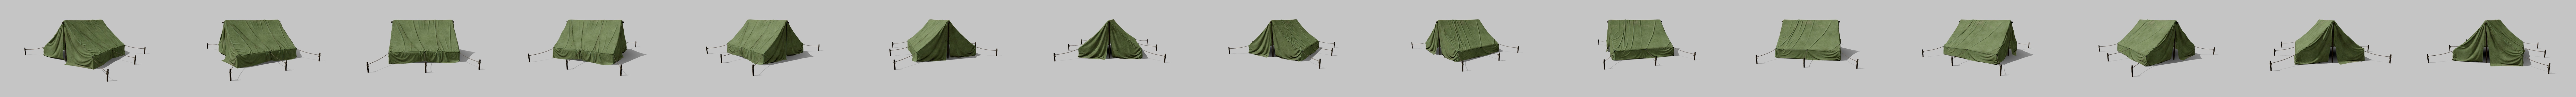 Military Tent - Buy Royalty Free 3D model by polyfarm (@polyfarm) [a9c3970]